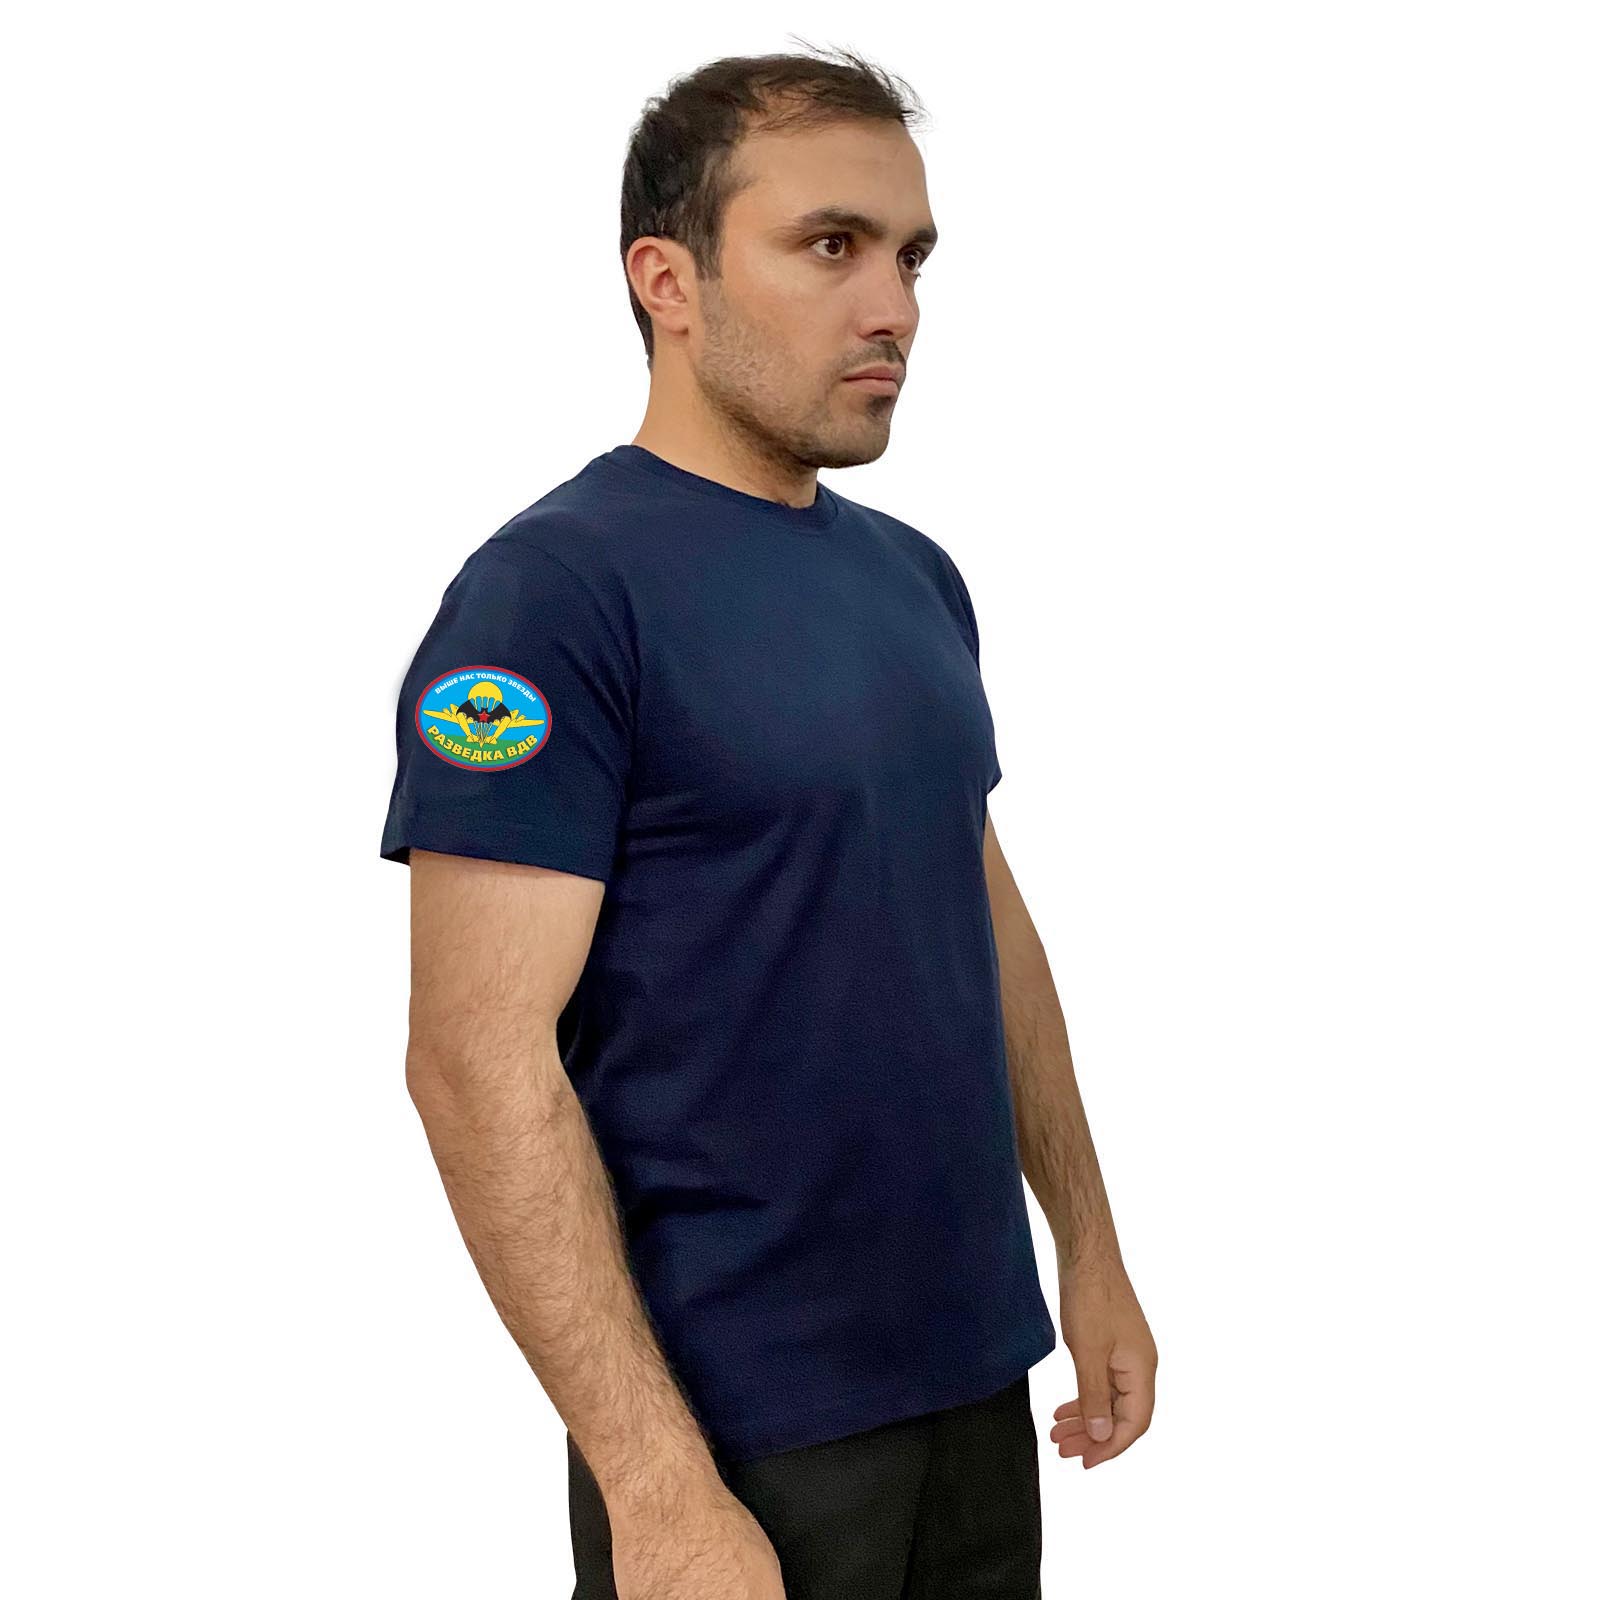 Тёмно-синяя футболка с термотрансфером "Разведка ВДВ" на рукаве